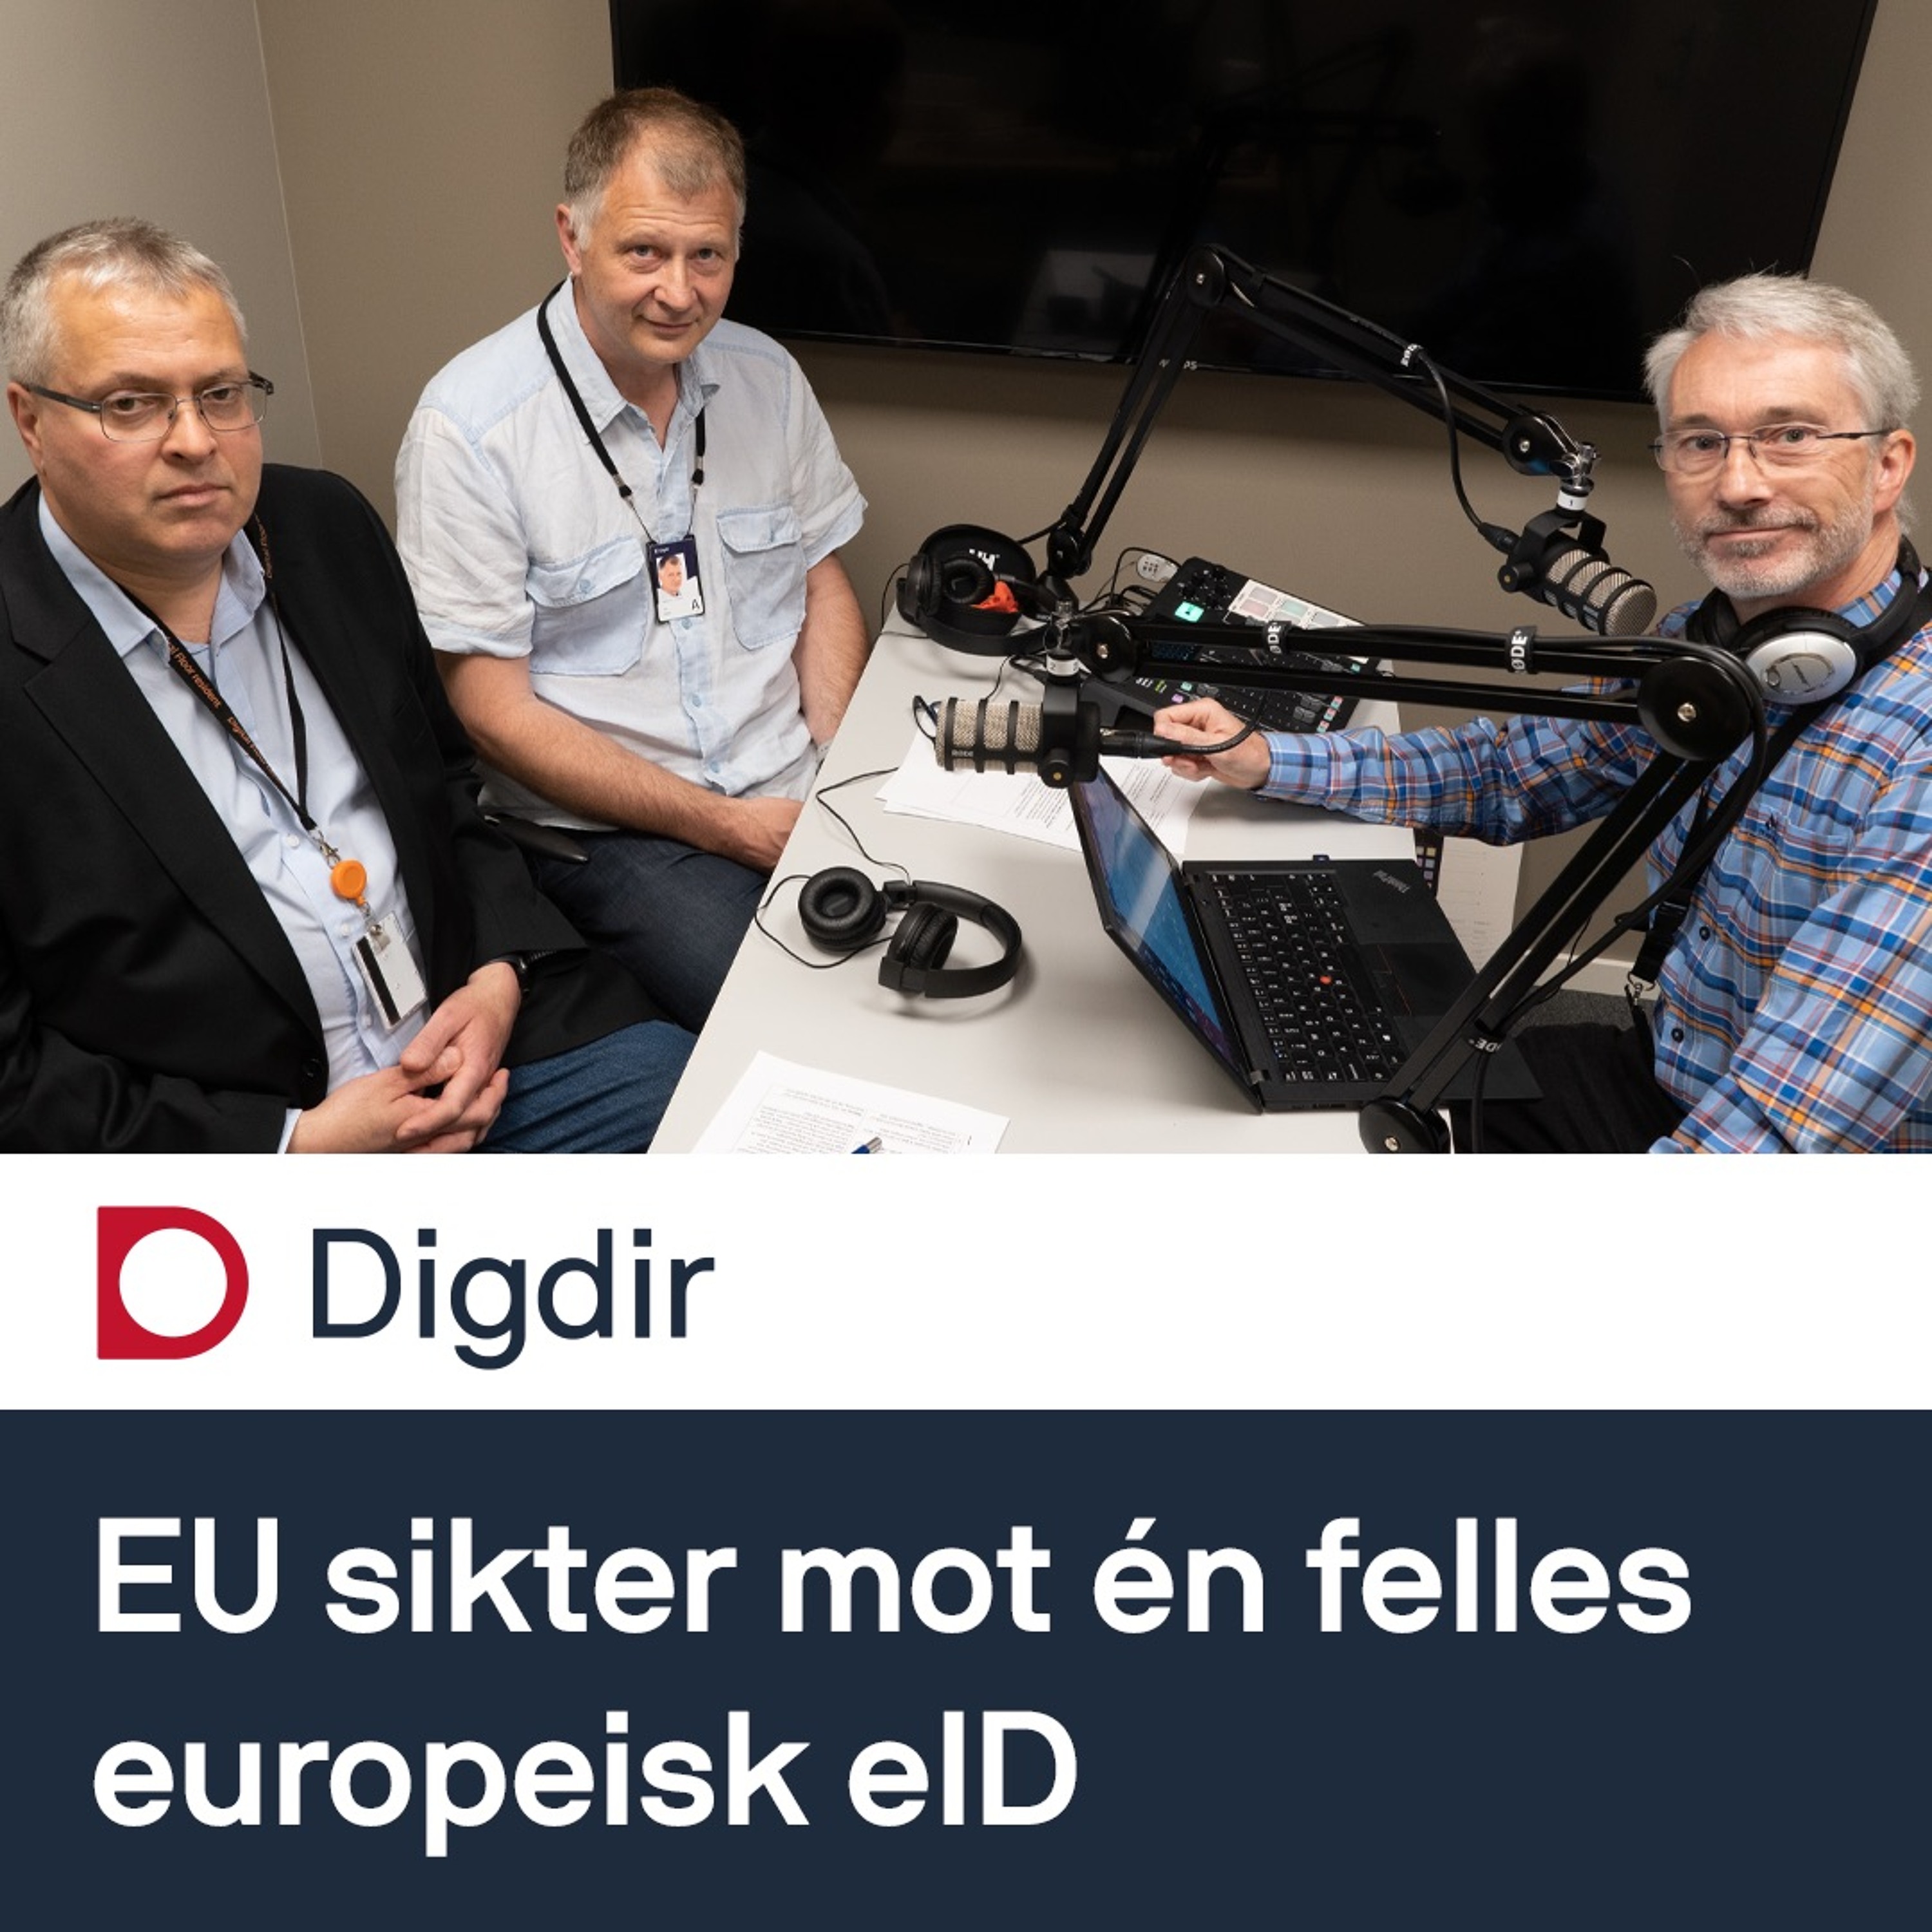 EU sikter mot én felles europeisk eID